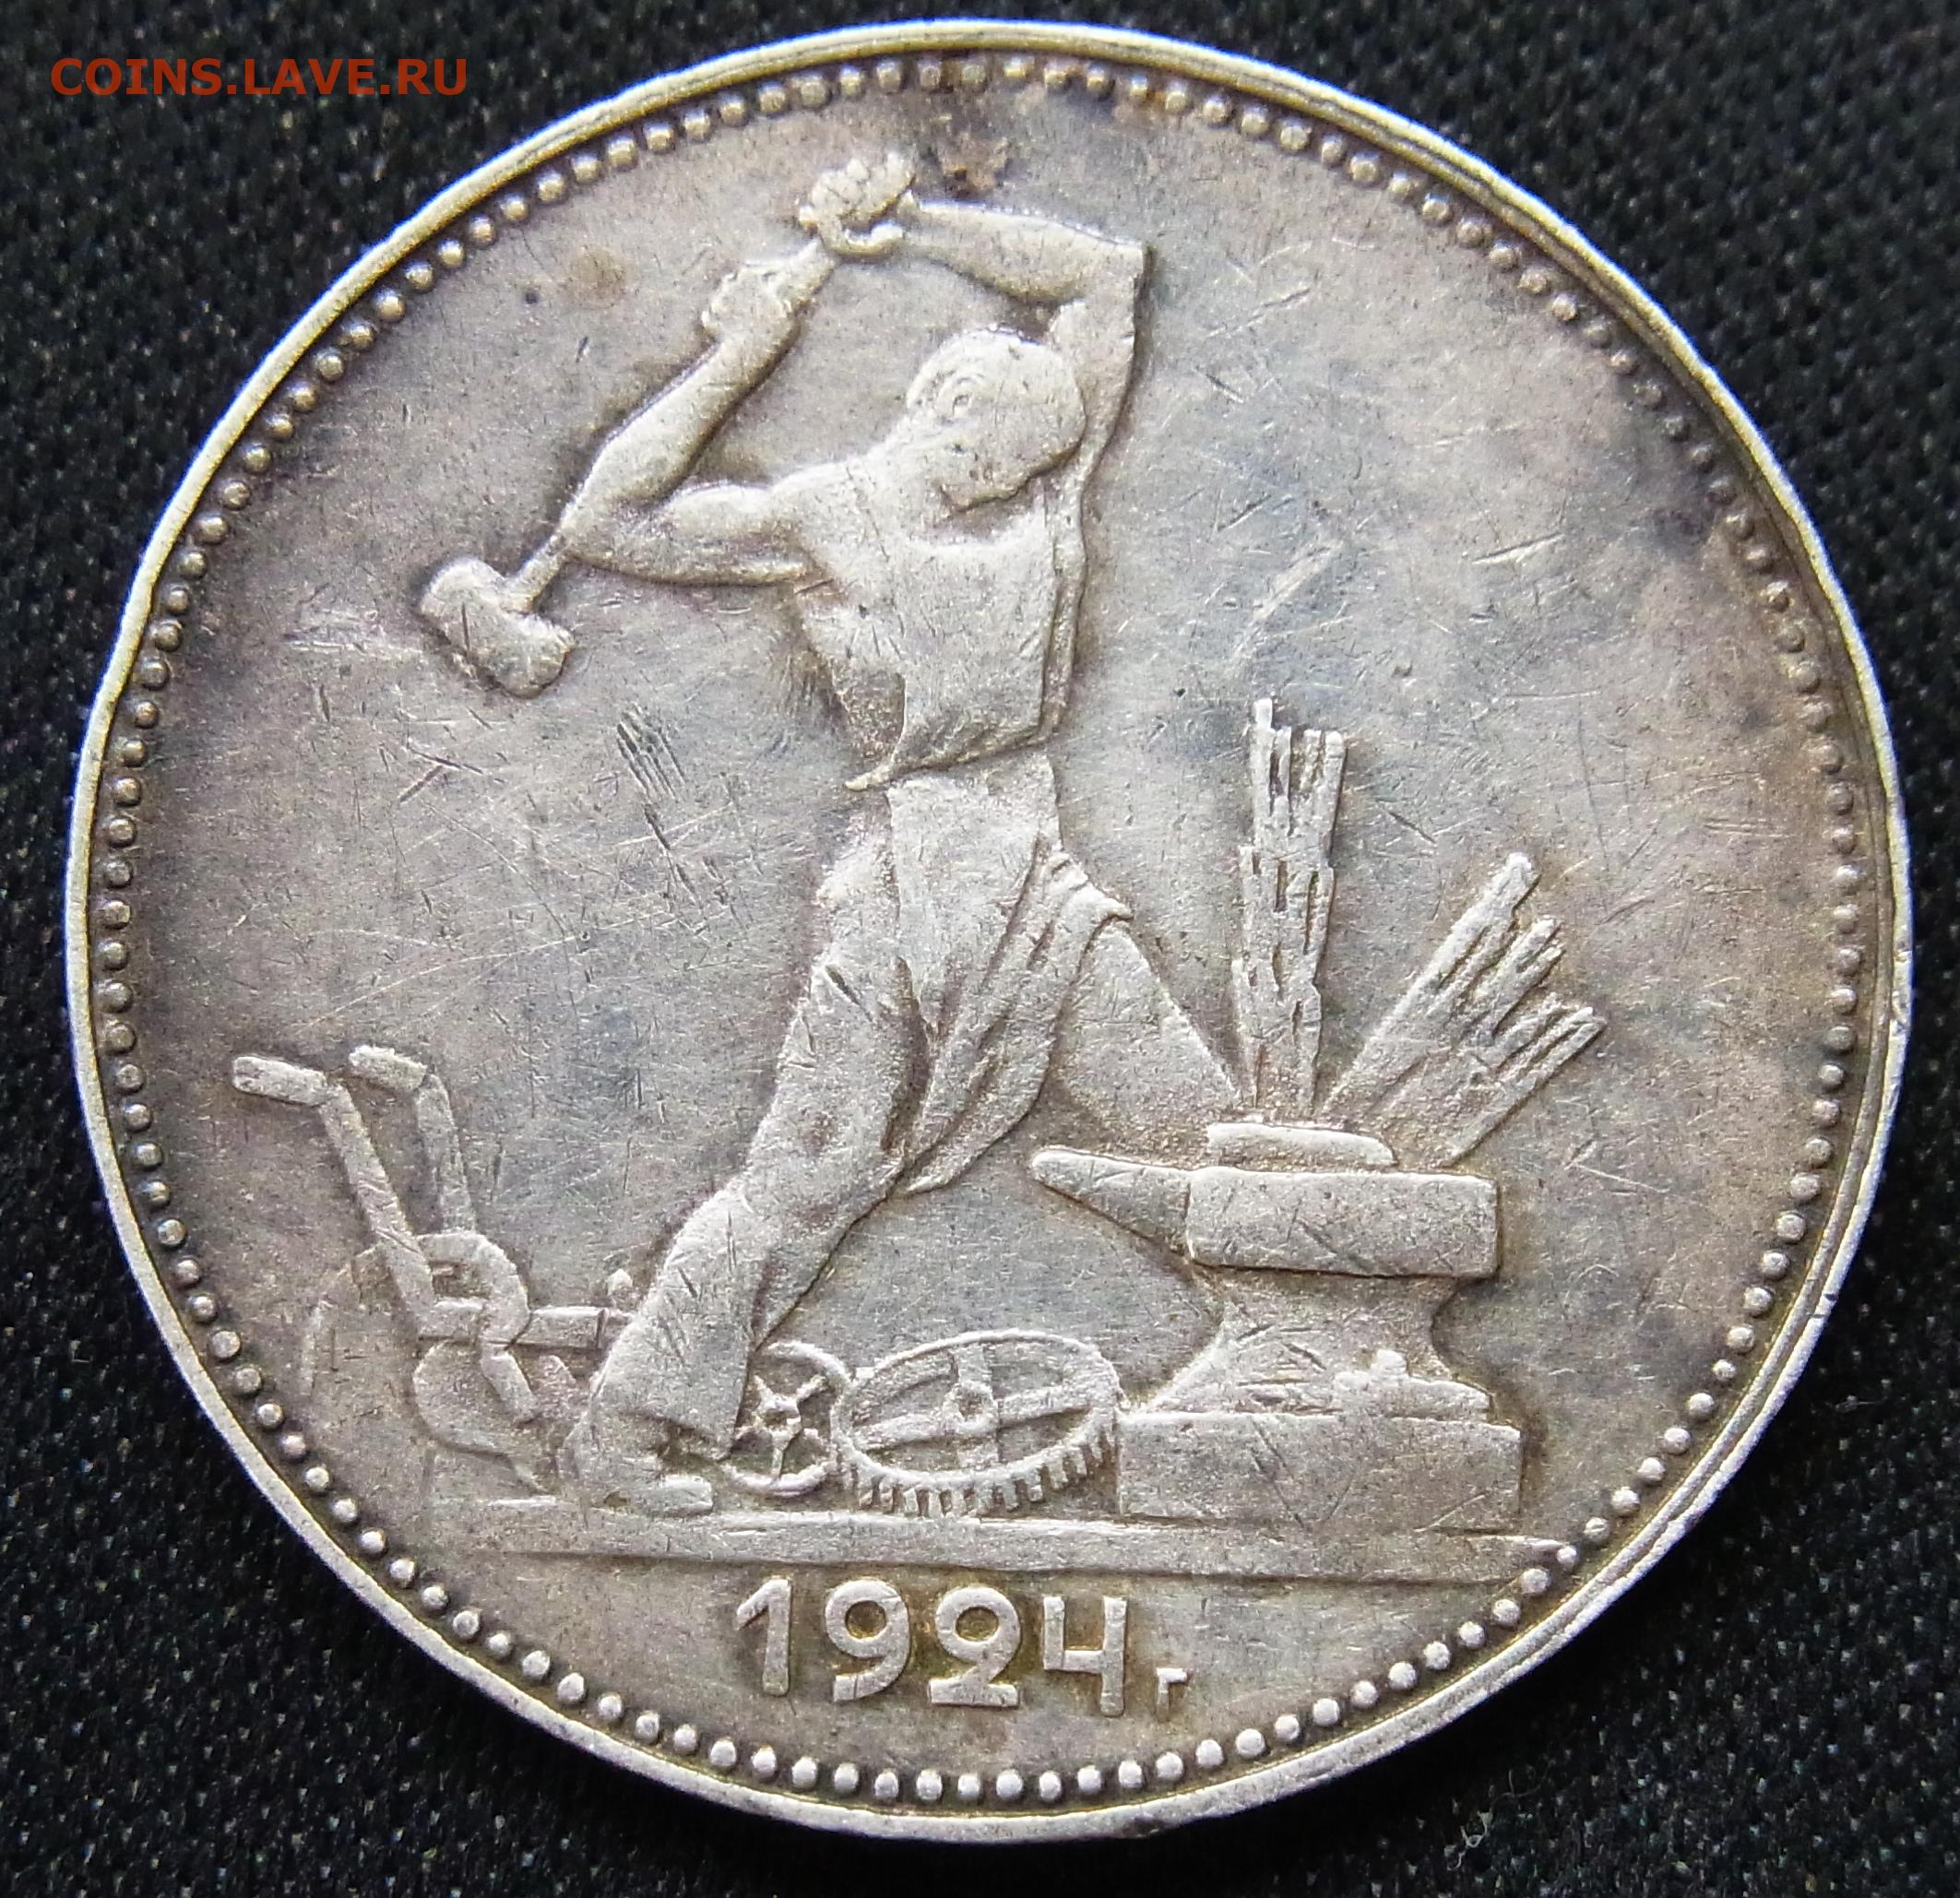 Серебряная монета полтинник 1924 года. 26 Февраля 1924 года появились серебряные монеты.